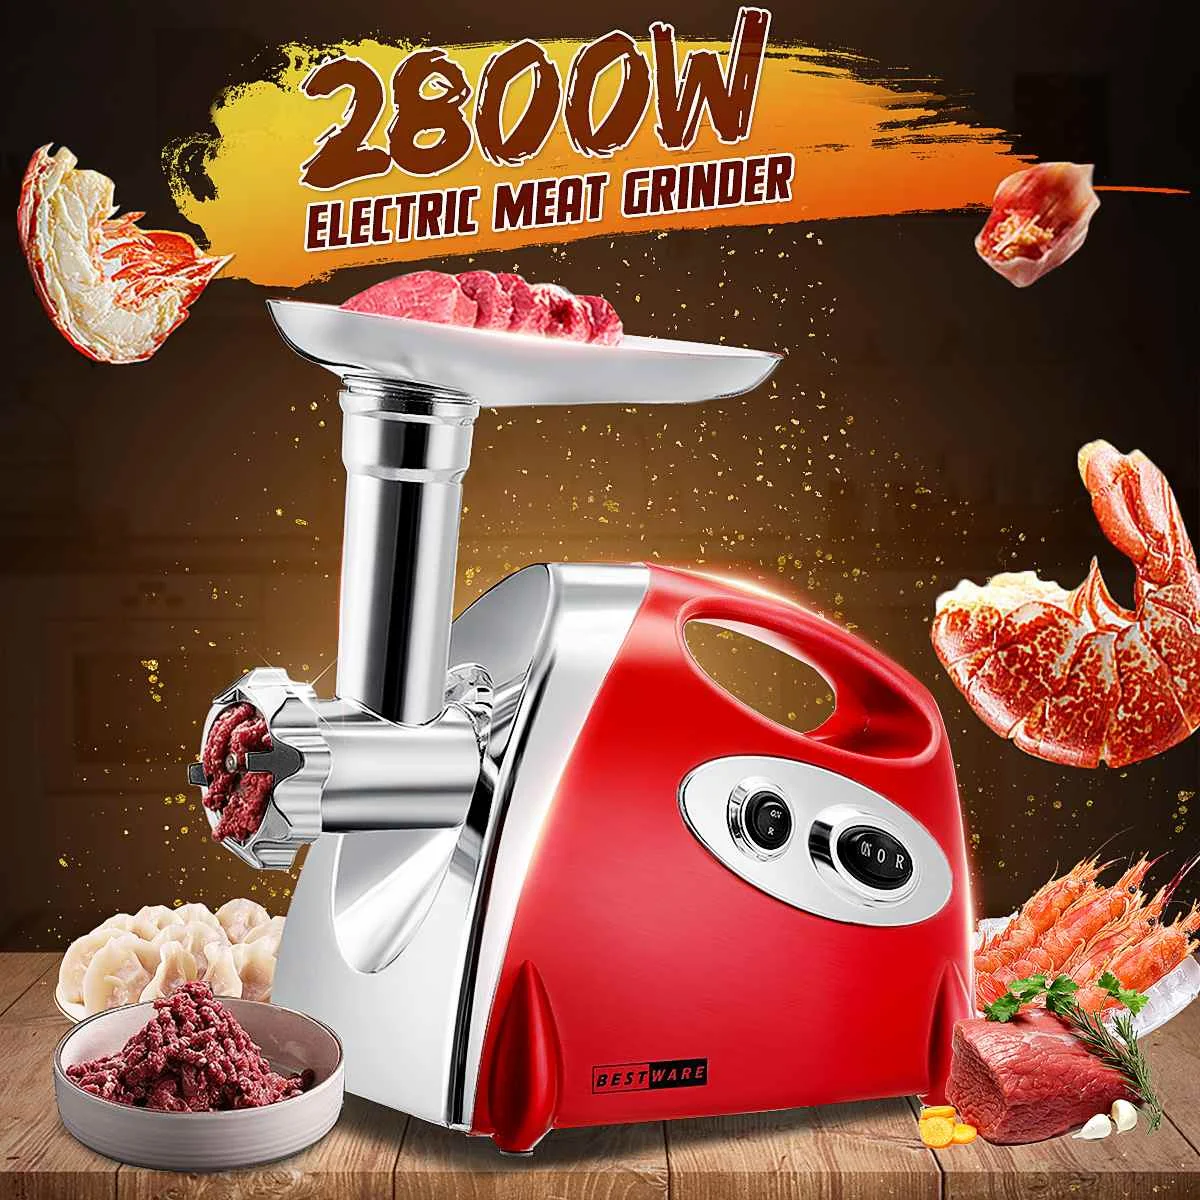 

110V-220V 2800W Electric Meat Grinder Mixer Kitchen Mincer Sausage Stuffer Maker Filler Machine Food Processor Slicer for Patty